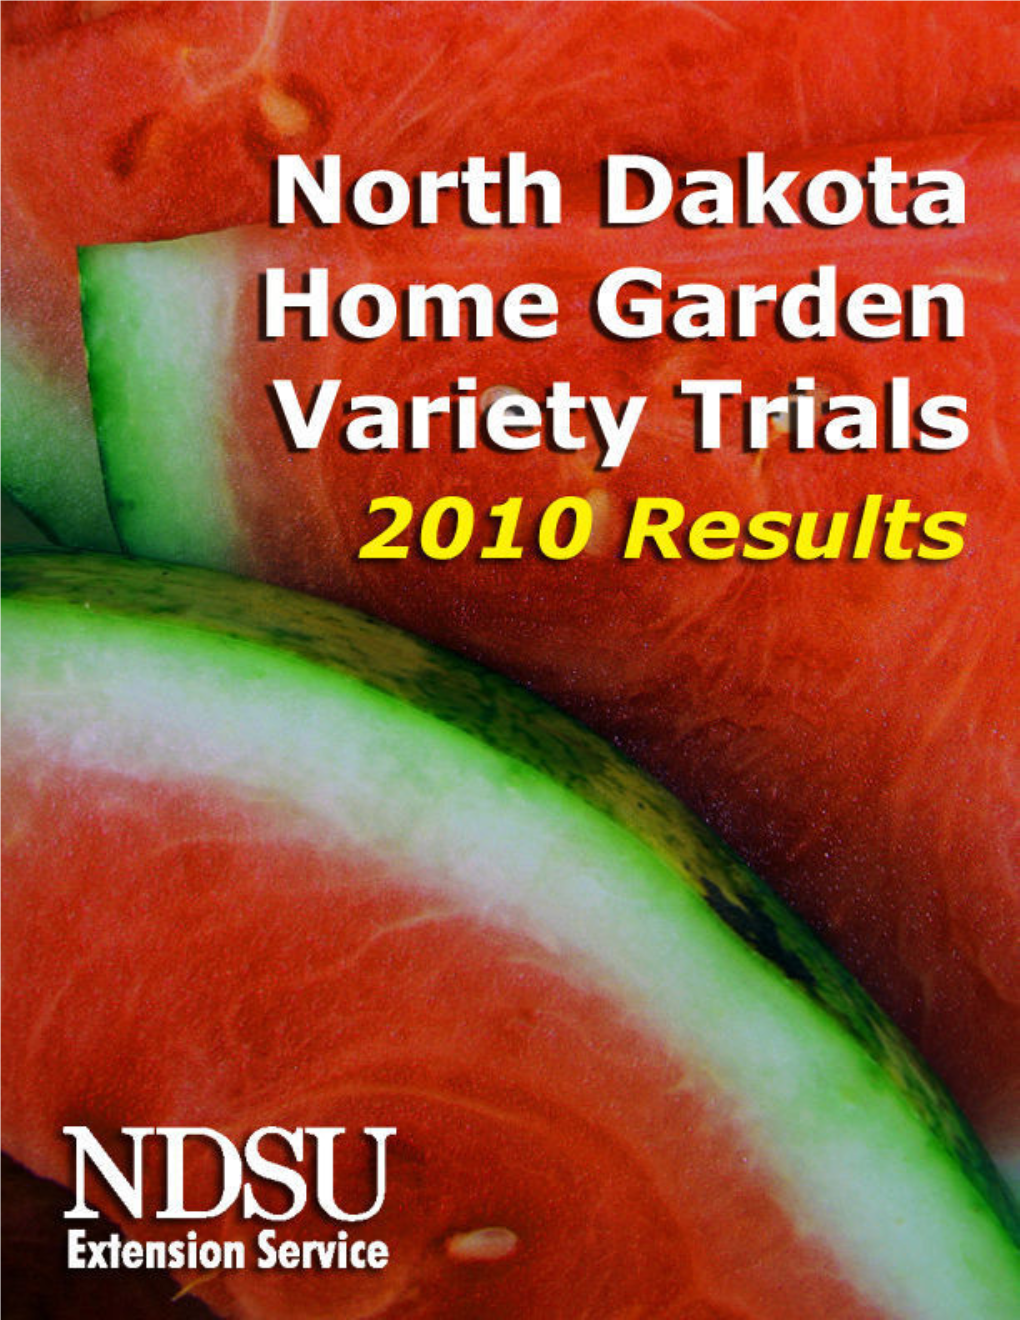 North Dakota Home Garden Variety Trials: Results 2010